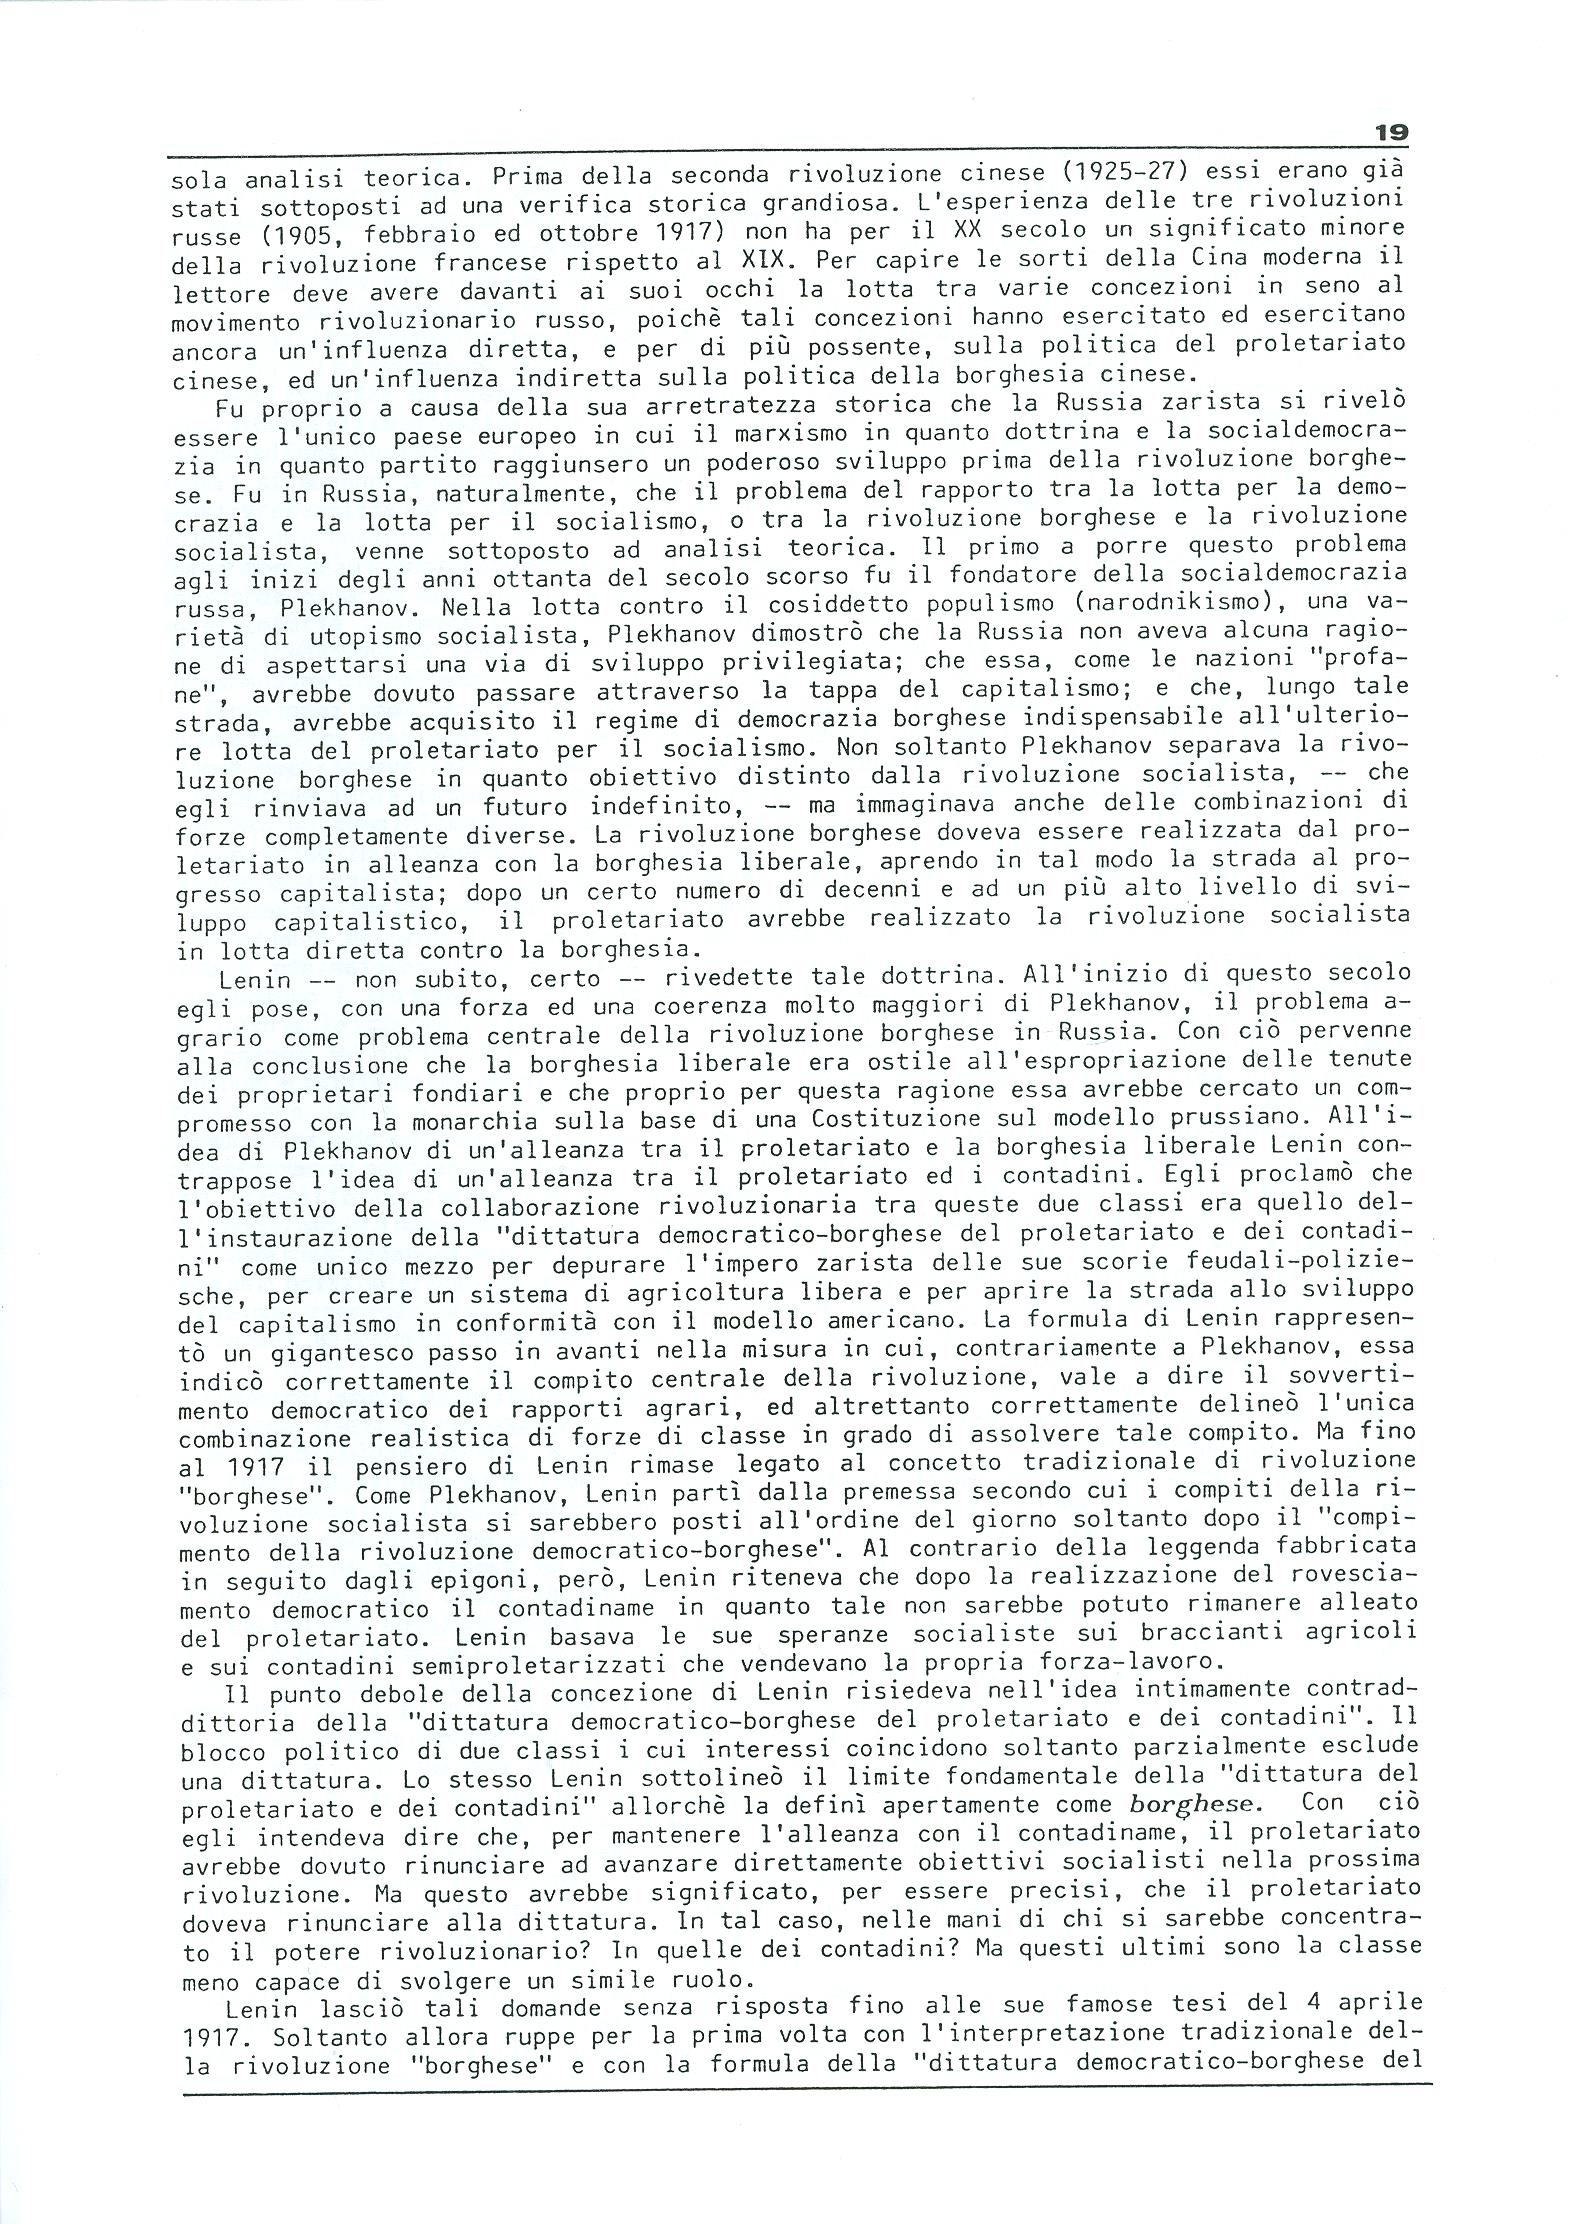 Studi e Ricerche n. 18 (aprile 1990) - pag. 19